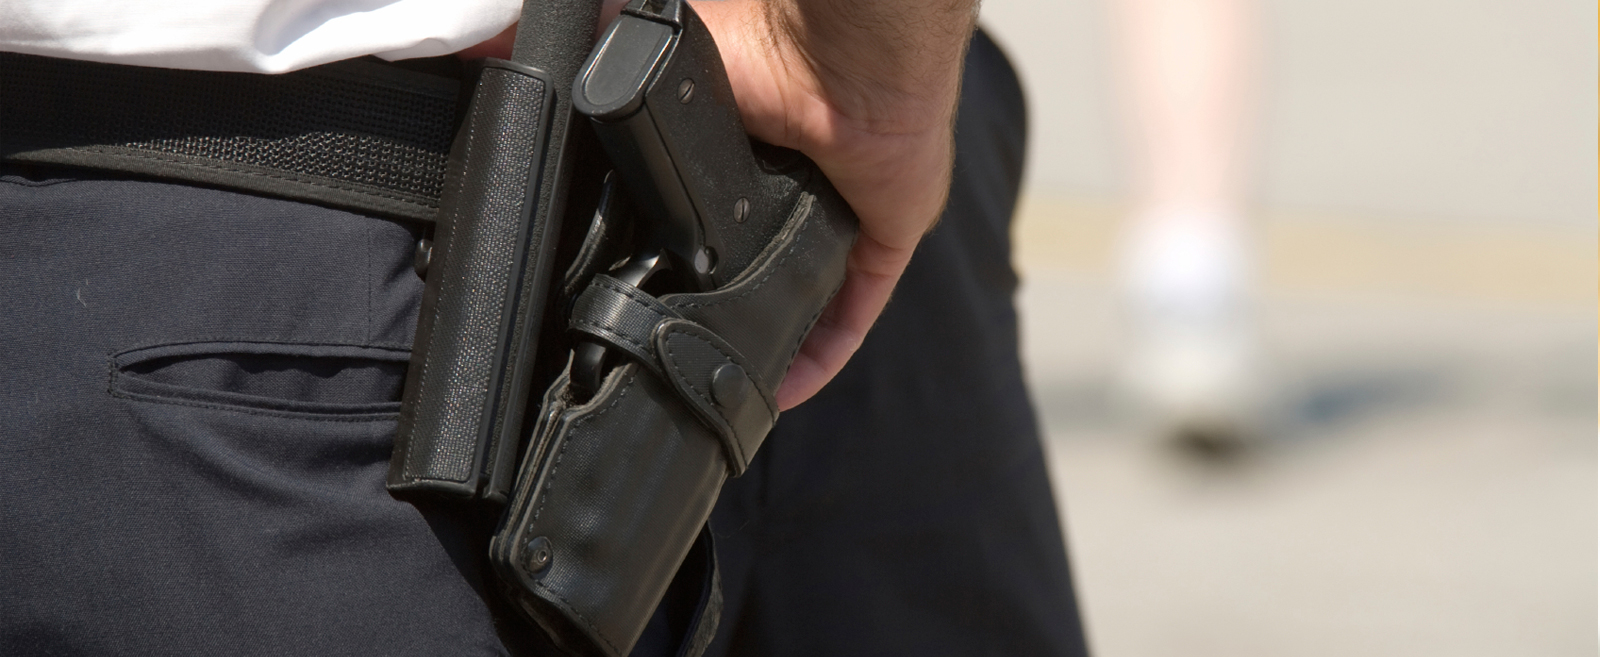 В Челябинской области охранник применил табельное оружие, чтобы остановить грабителя